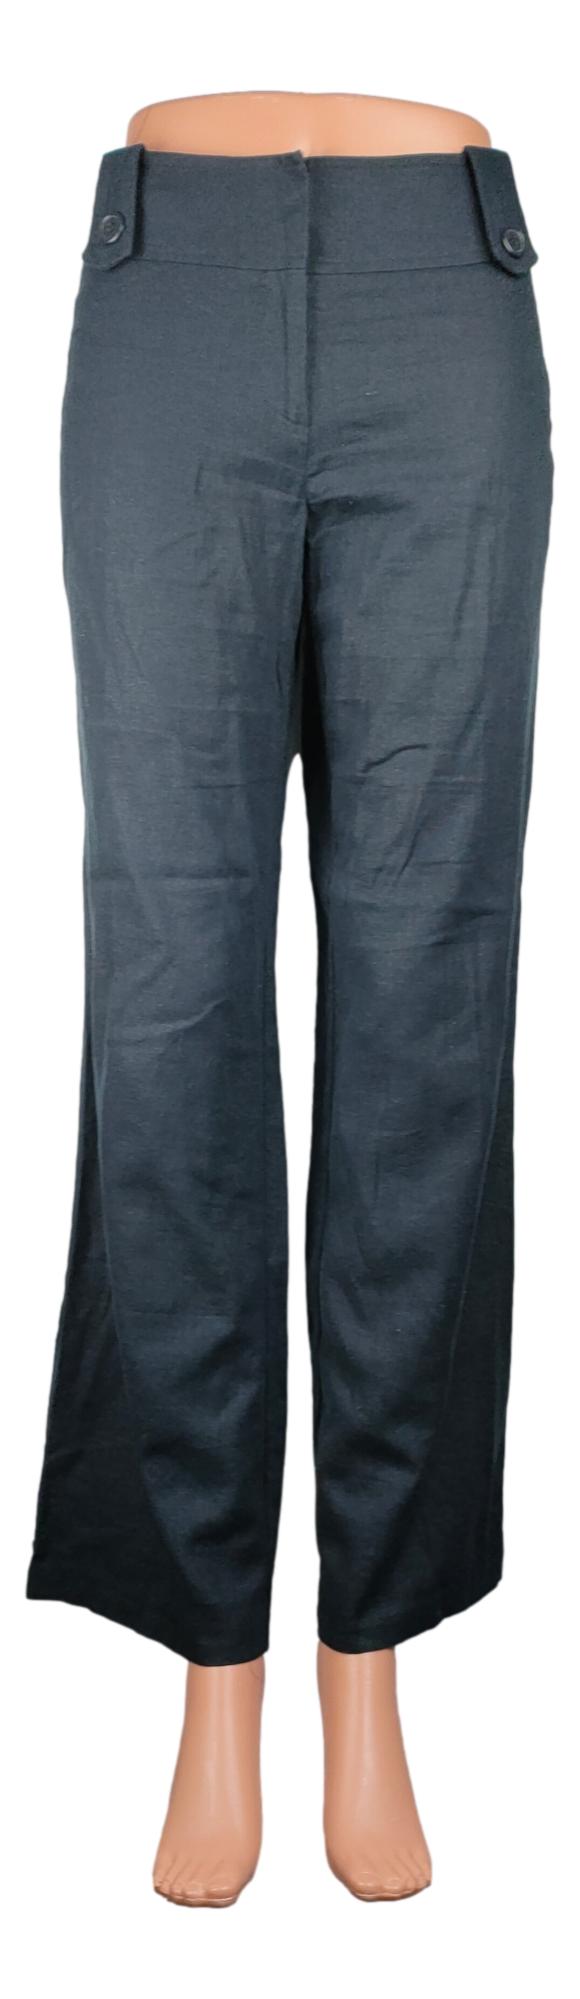 Pantalon New Look - Taille 38